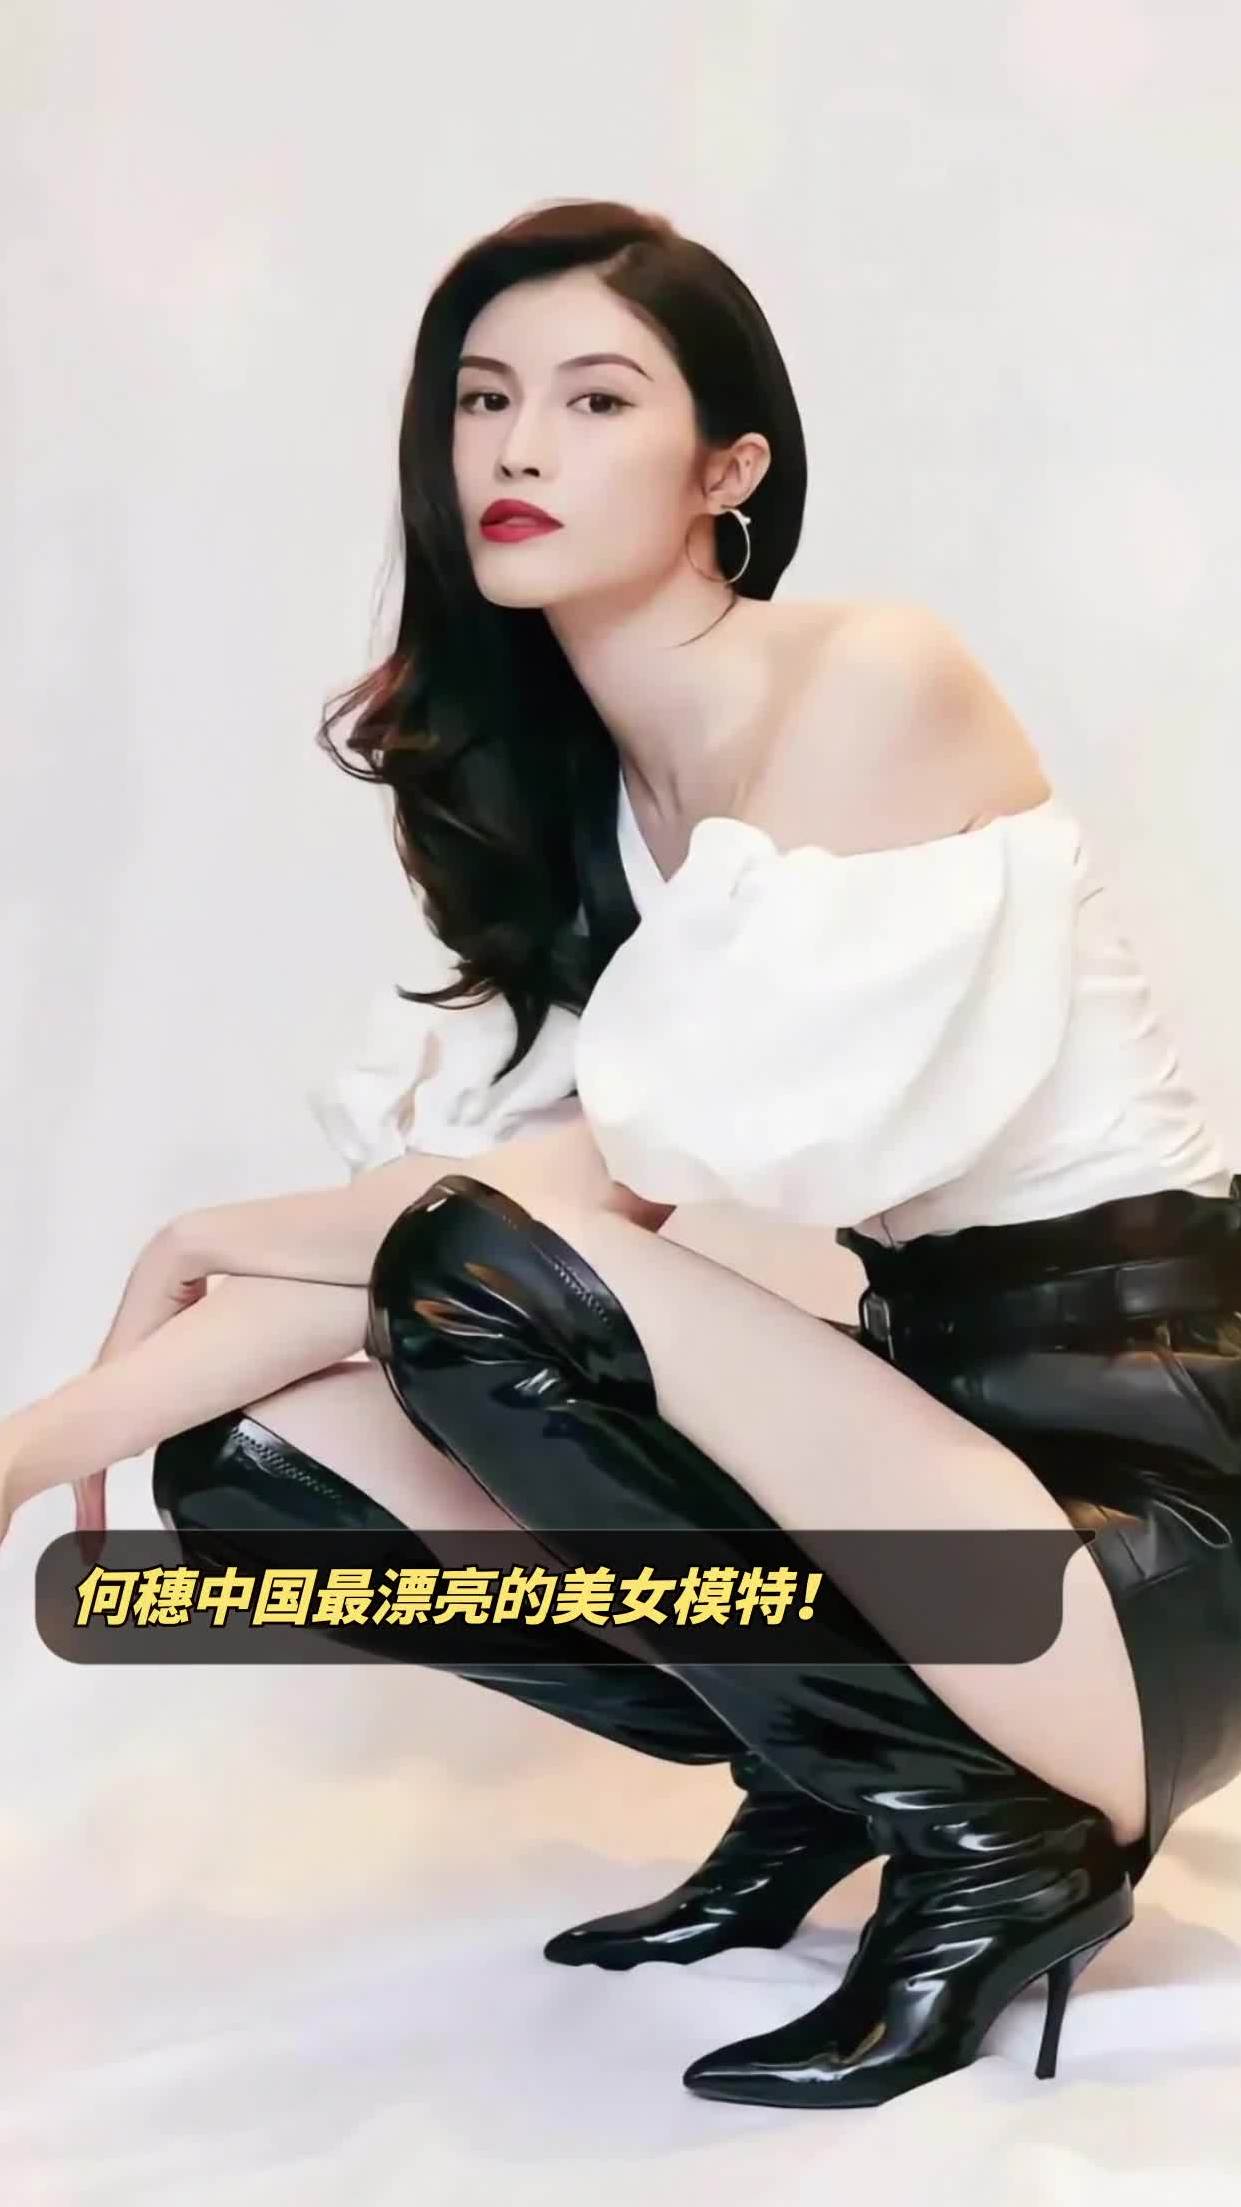 何穗中国最漂亮的美女模特!